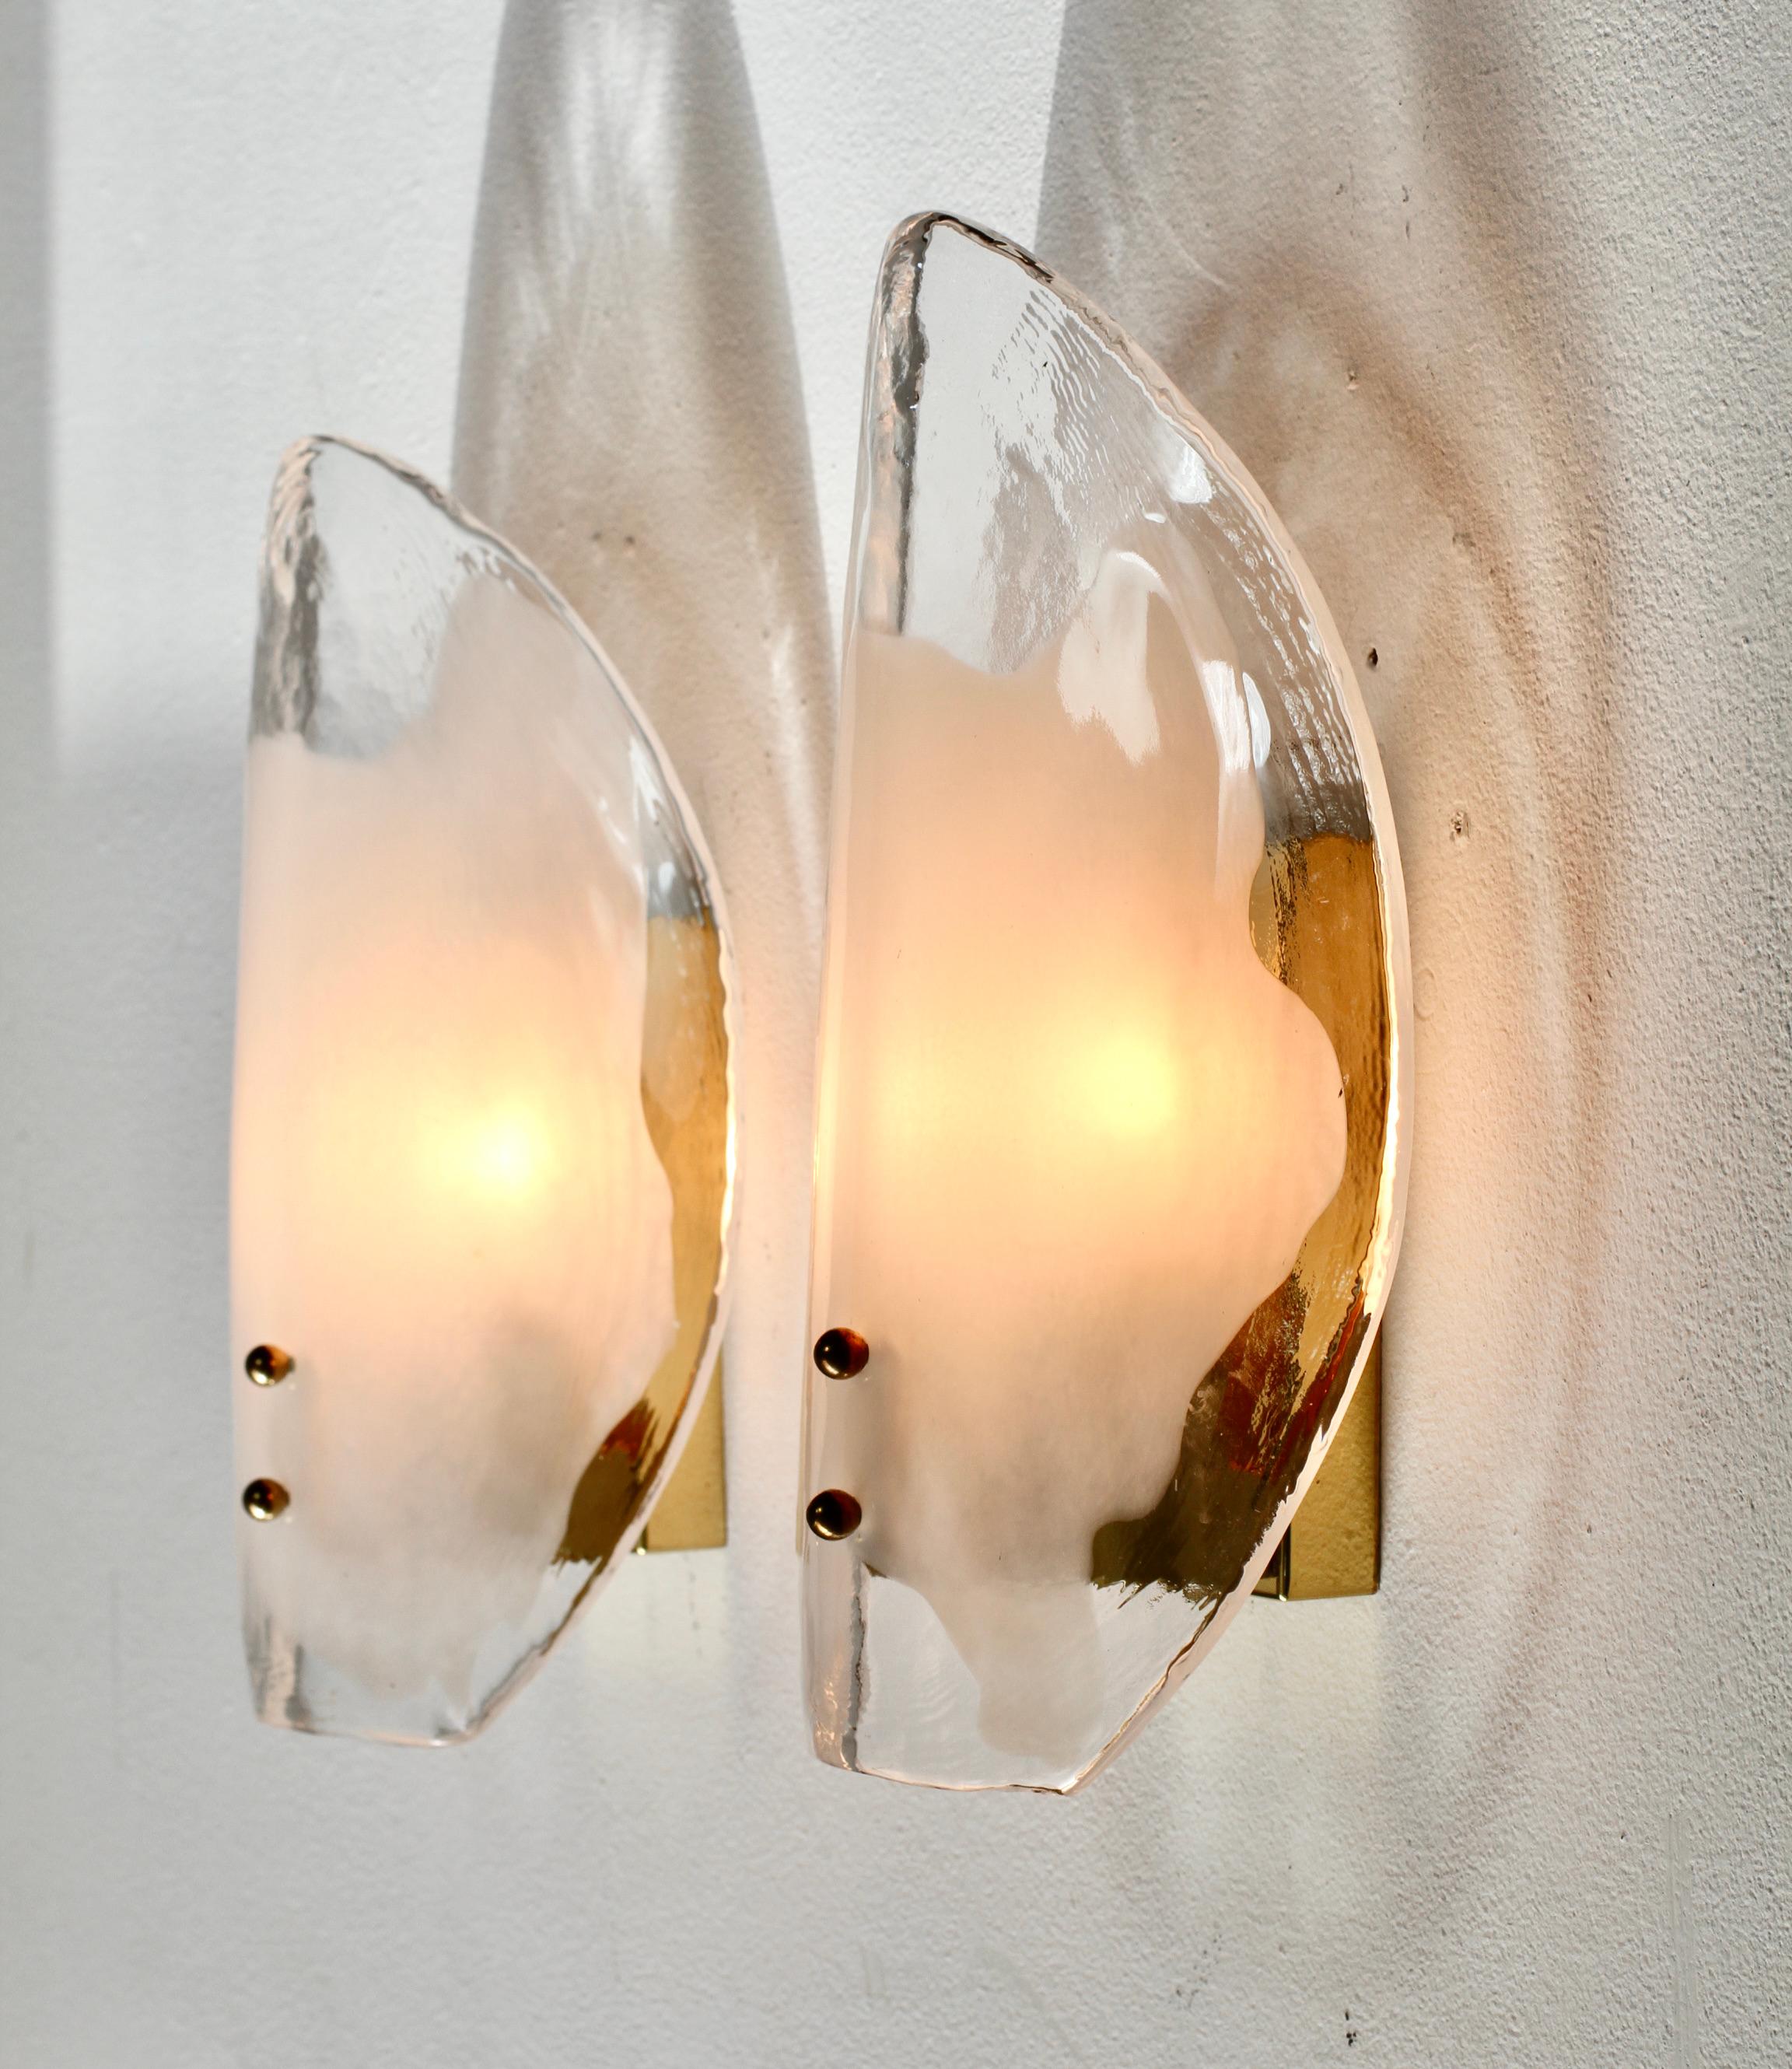 Eines von acht Paaren von Vintage Mid-Century Modern seltenen, organischen Messing, weiß und klar Murano Glas Doppelsockel Wandlampen, Leuchten oder Wandleuchter von österreichischen Leuchtenhersteller Kalmar, circa 1970er Jahre. Mit zwei